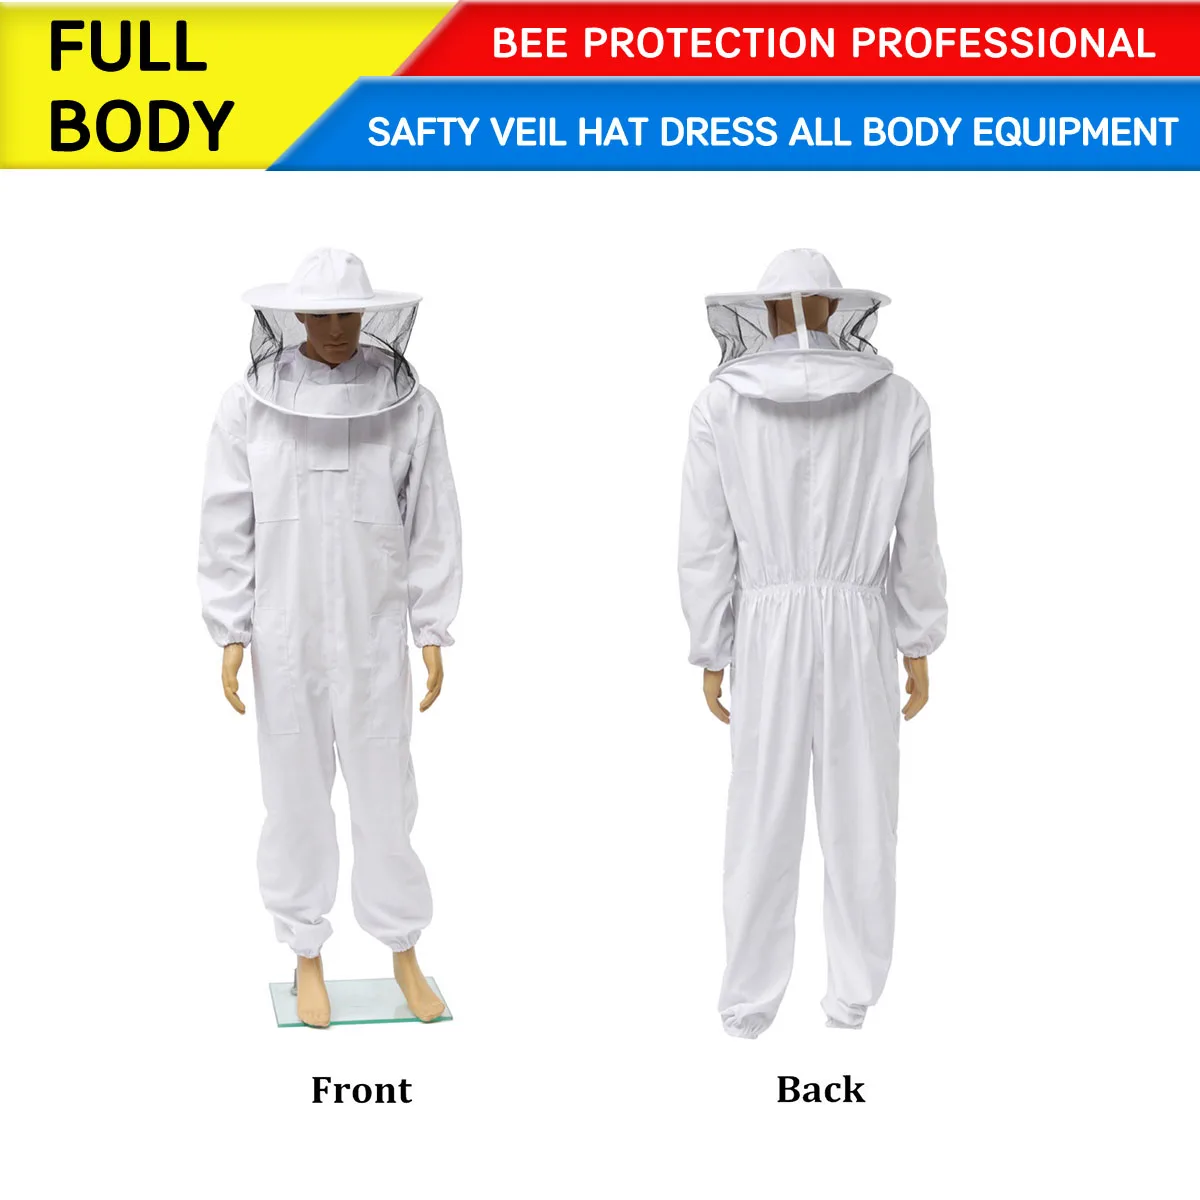 

Профессиональная одежда для пчеловодства, пчеловодческий костюм с полной защитой для всего тела, защитная вуаль, шляпа, платье, все оборудо...